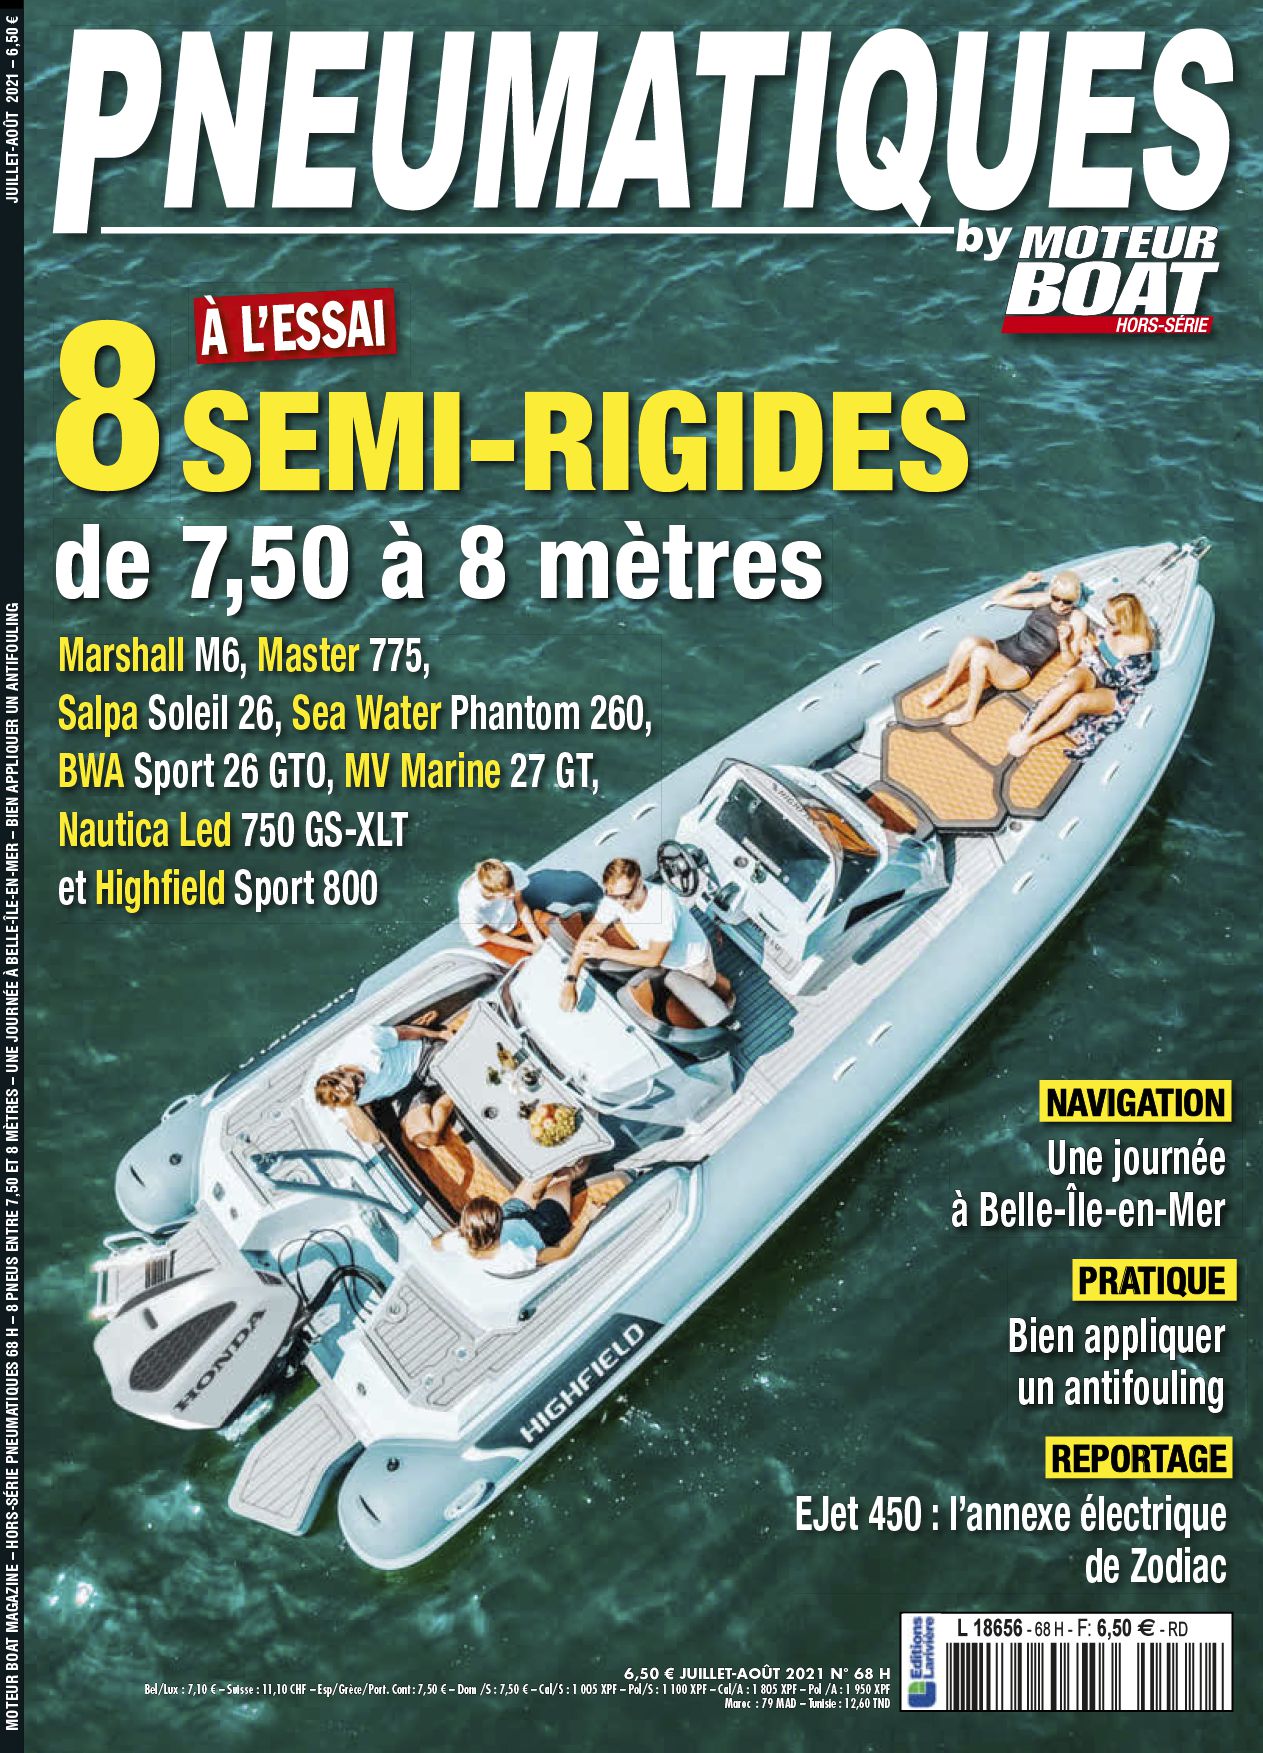 Abonnement magazine Hs moteur boat - Boutique Larivière